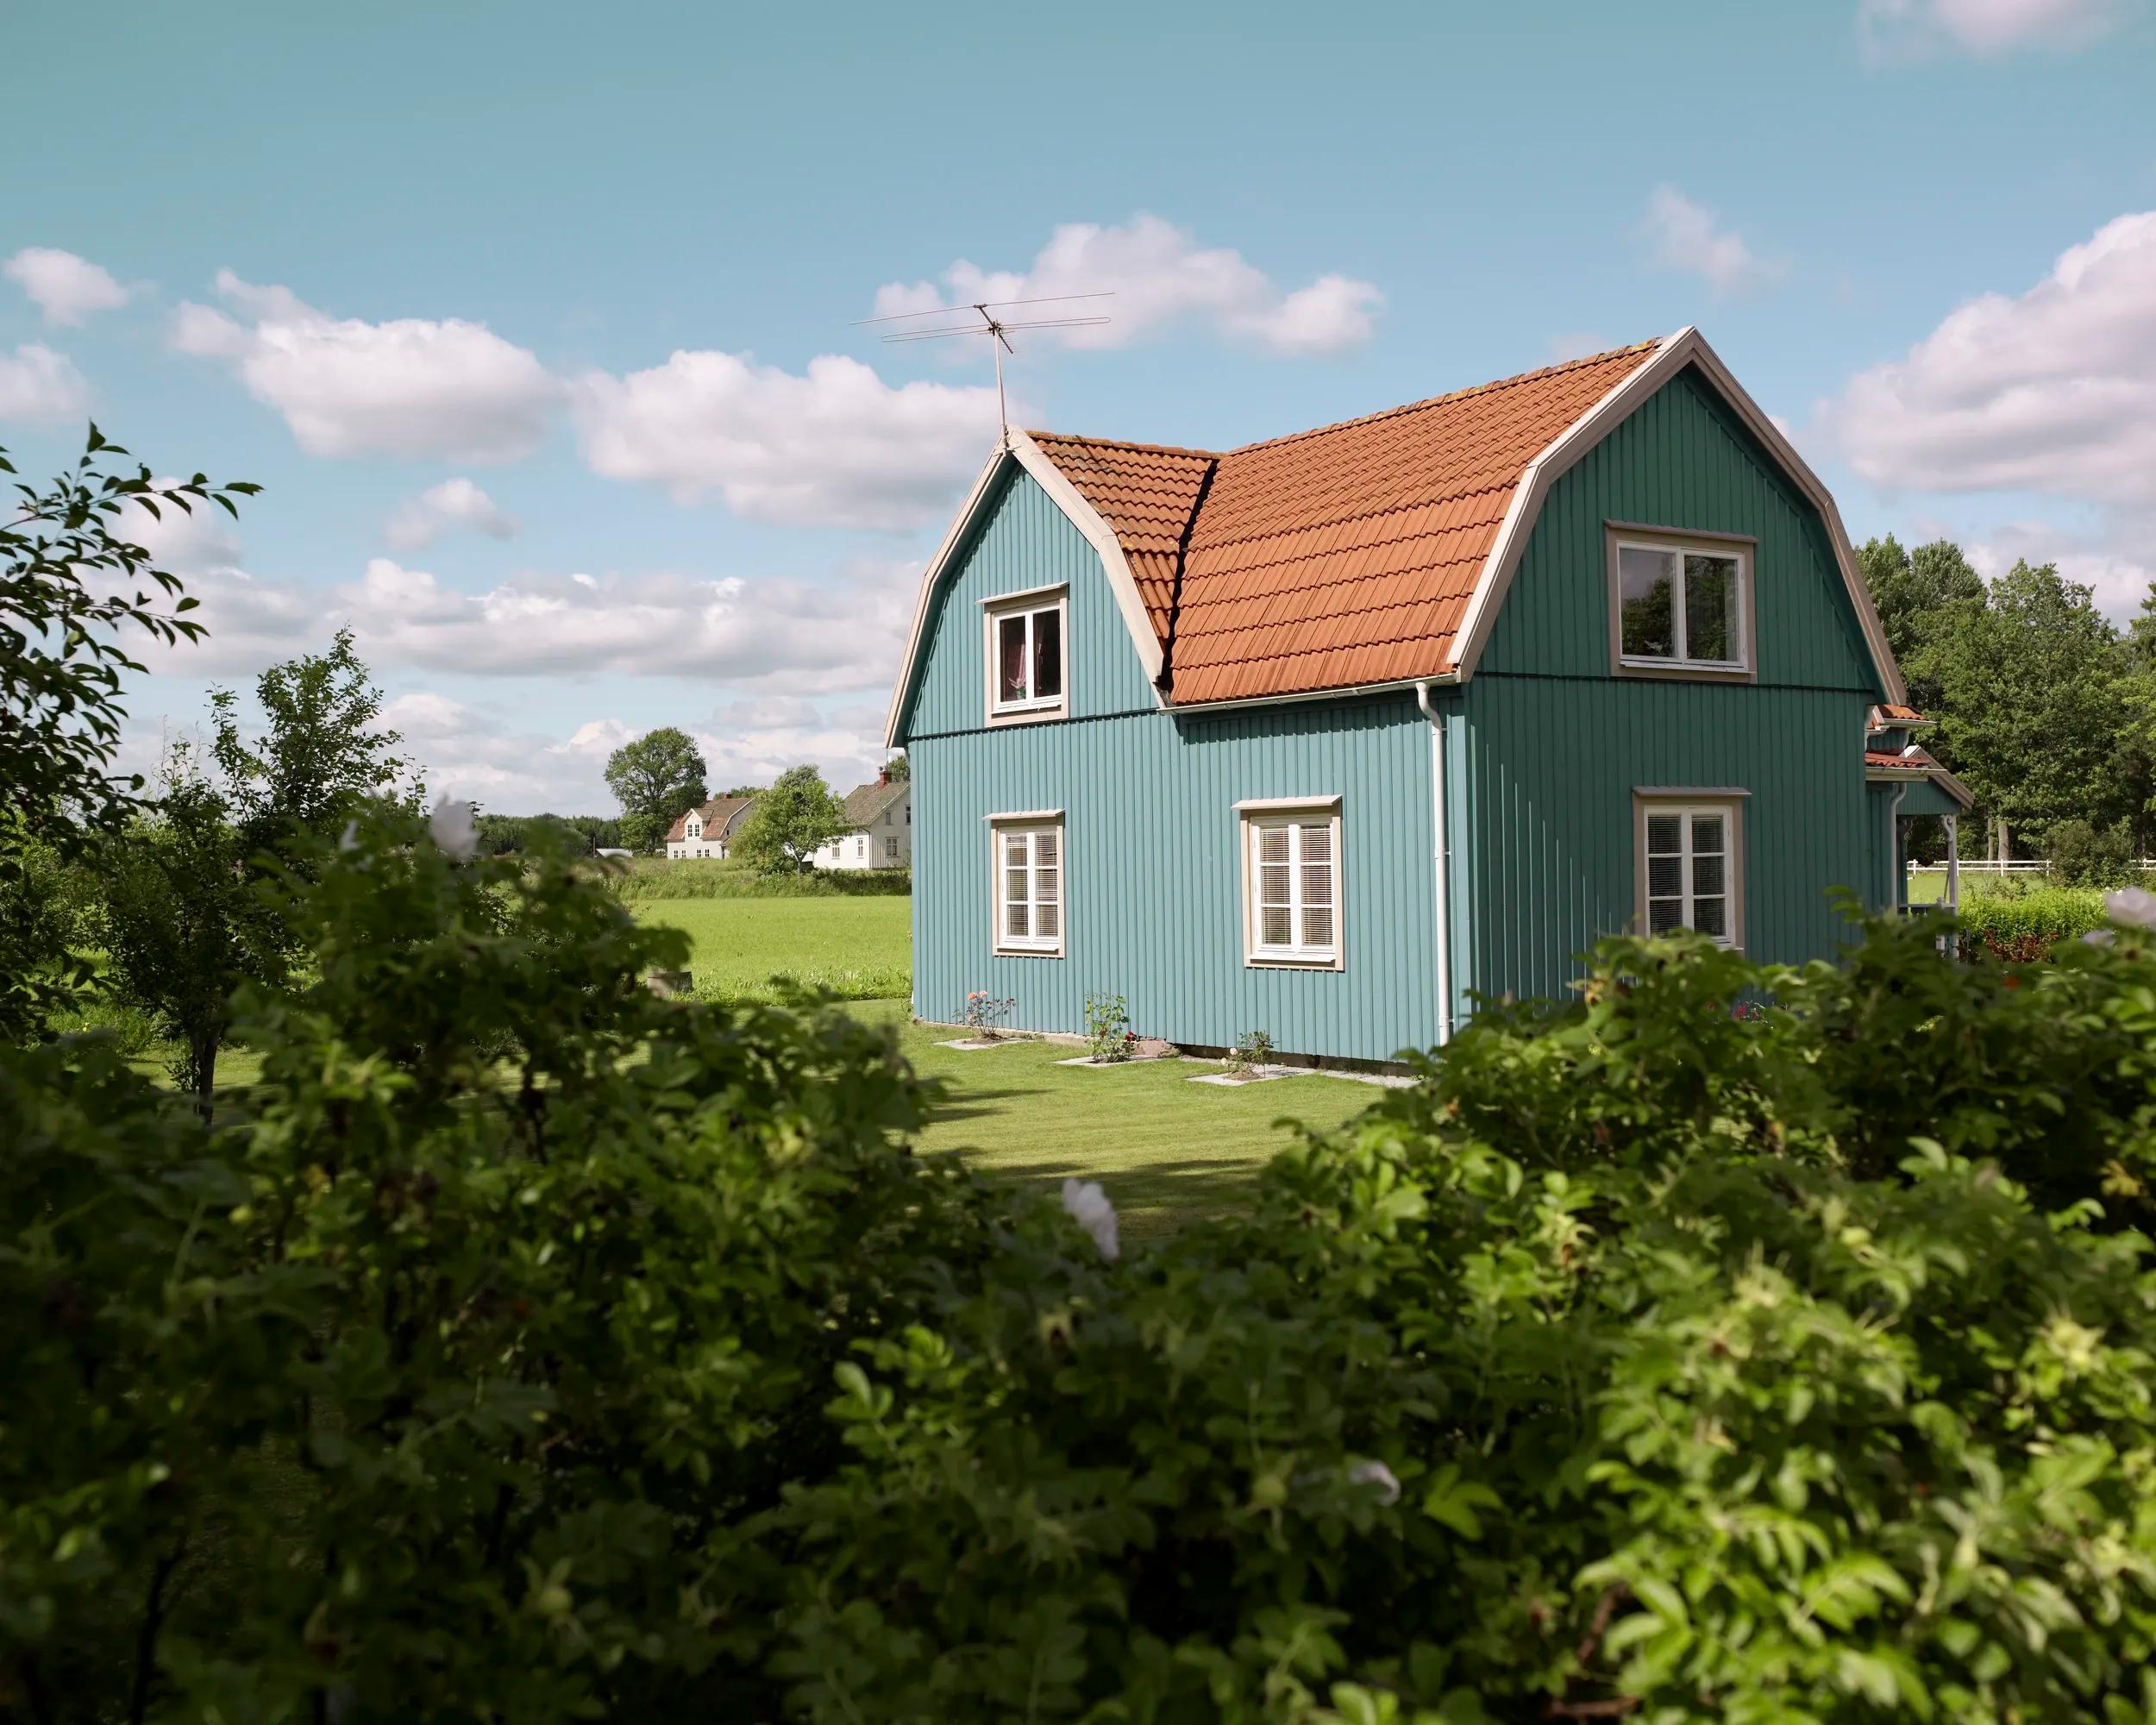 Idylliskt turkost hus omgivet av frodig trädgård och färgglada rabatter - symboliserar dräneringstjänst för effektiv och pålitlig hantering av vattenavledning och skydd av din bostadsgrund